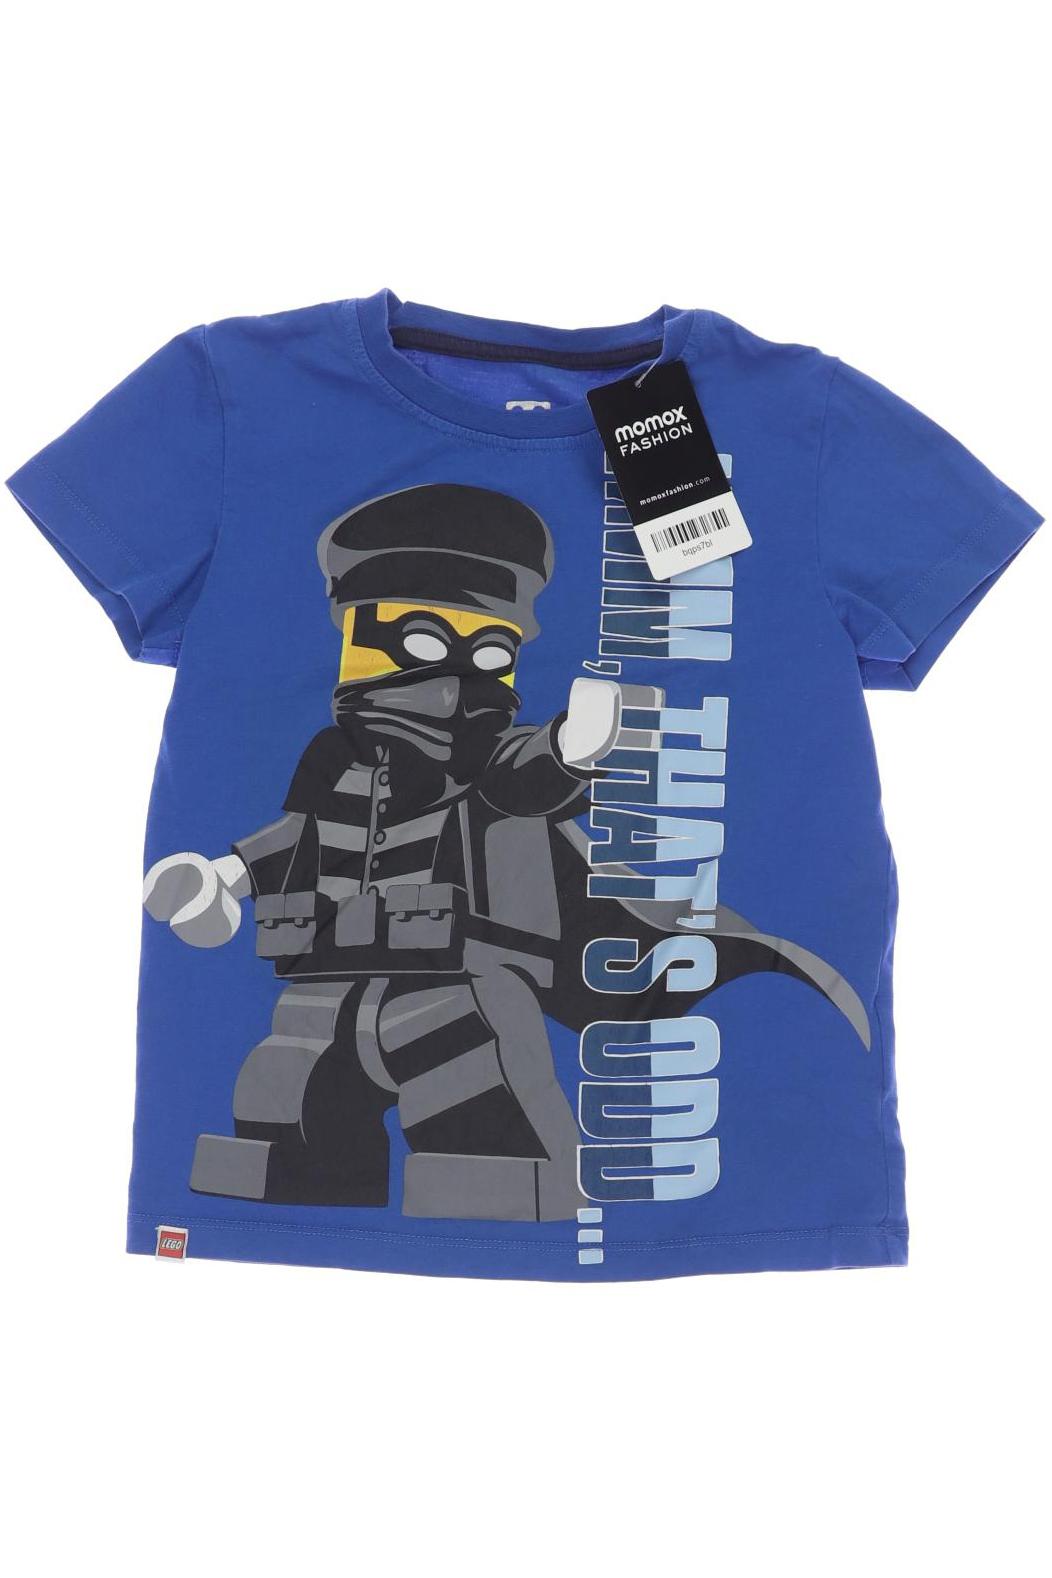 Lego Wear Jungen T-Shirt, blau von lego wear